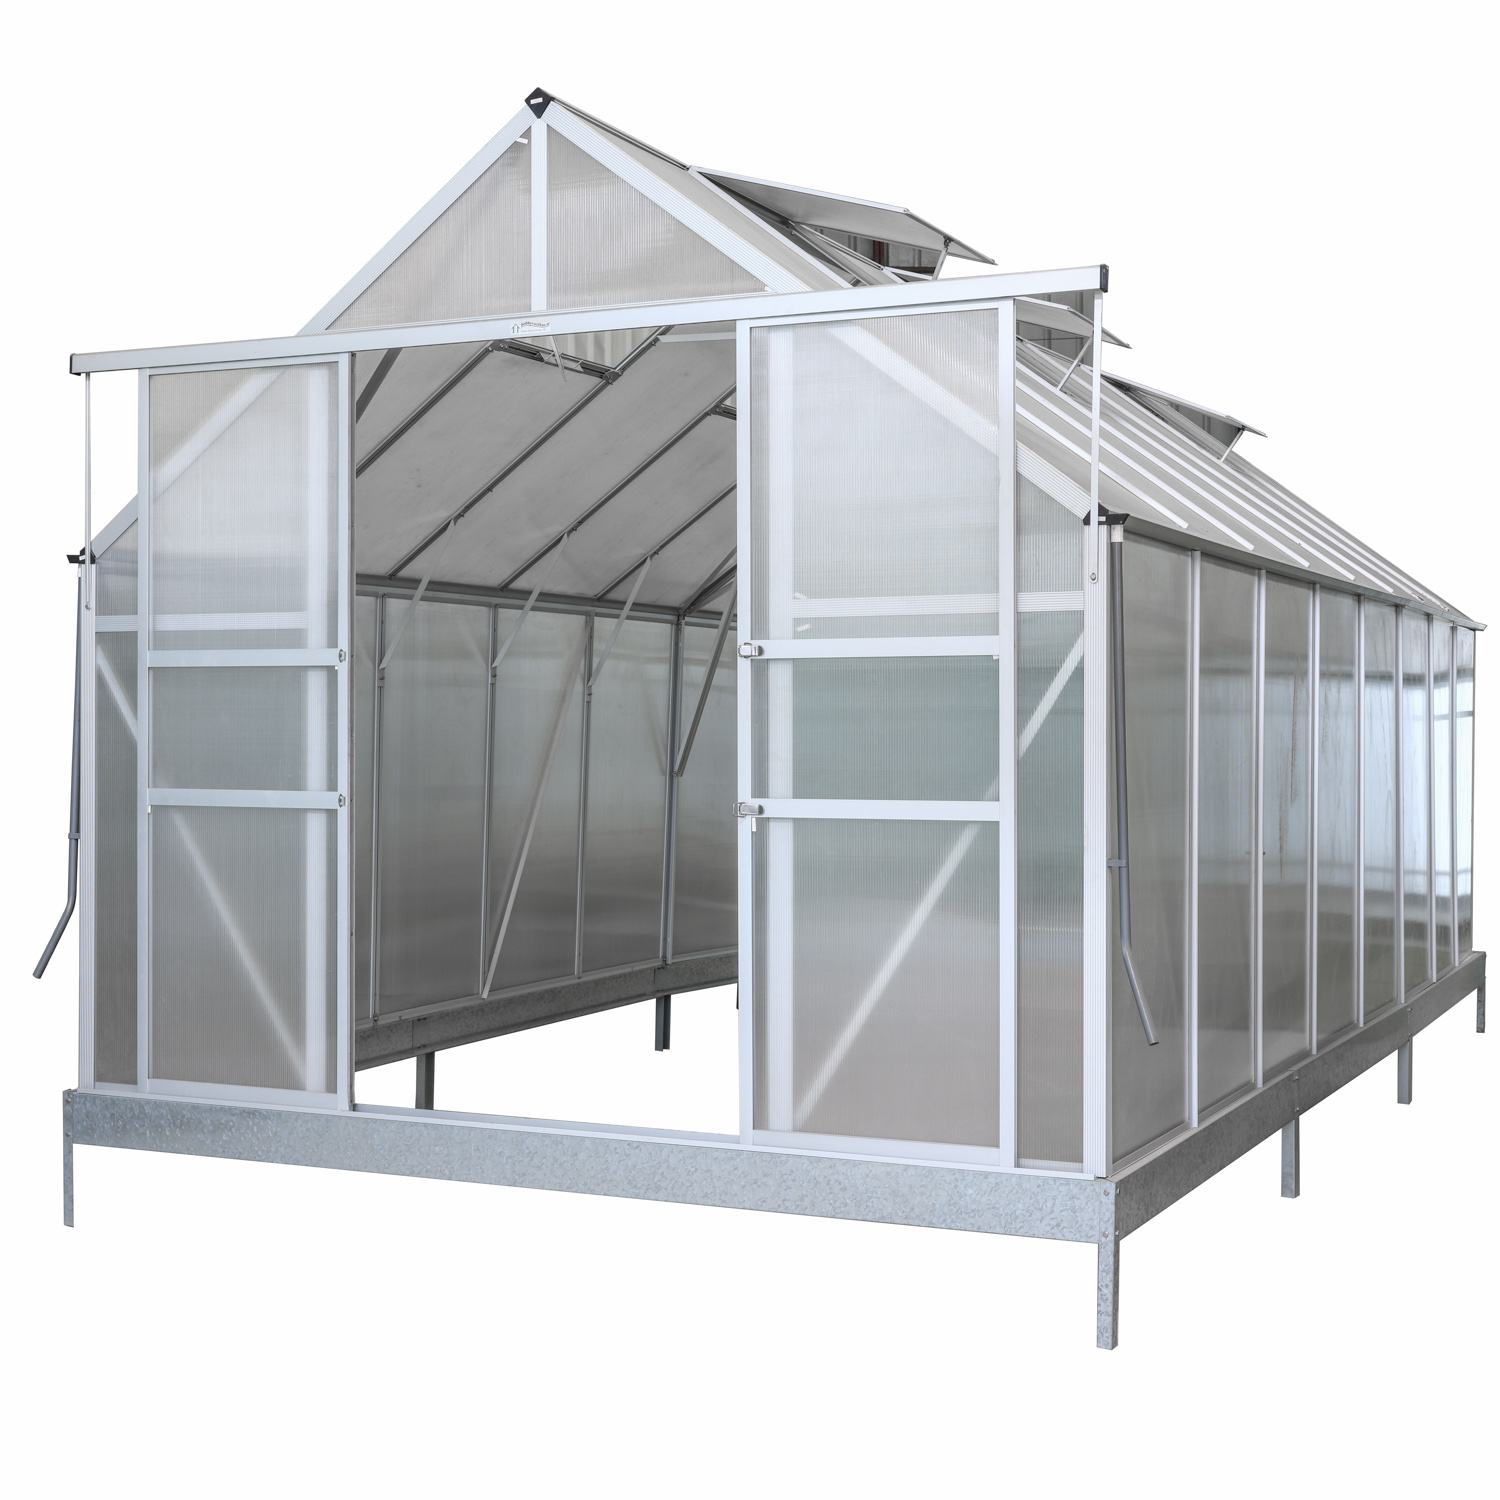  Multi Span 6mm Polycarbonate Sheet Green House Aluminium Garden House for Vegetables (RDGS0819-6mm)